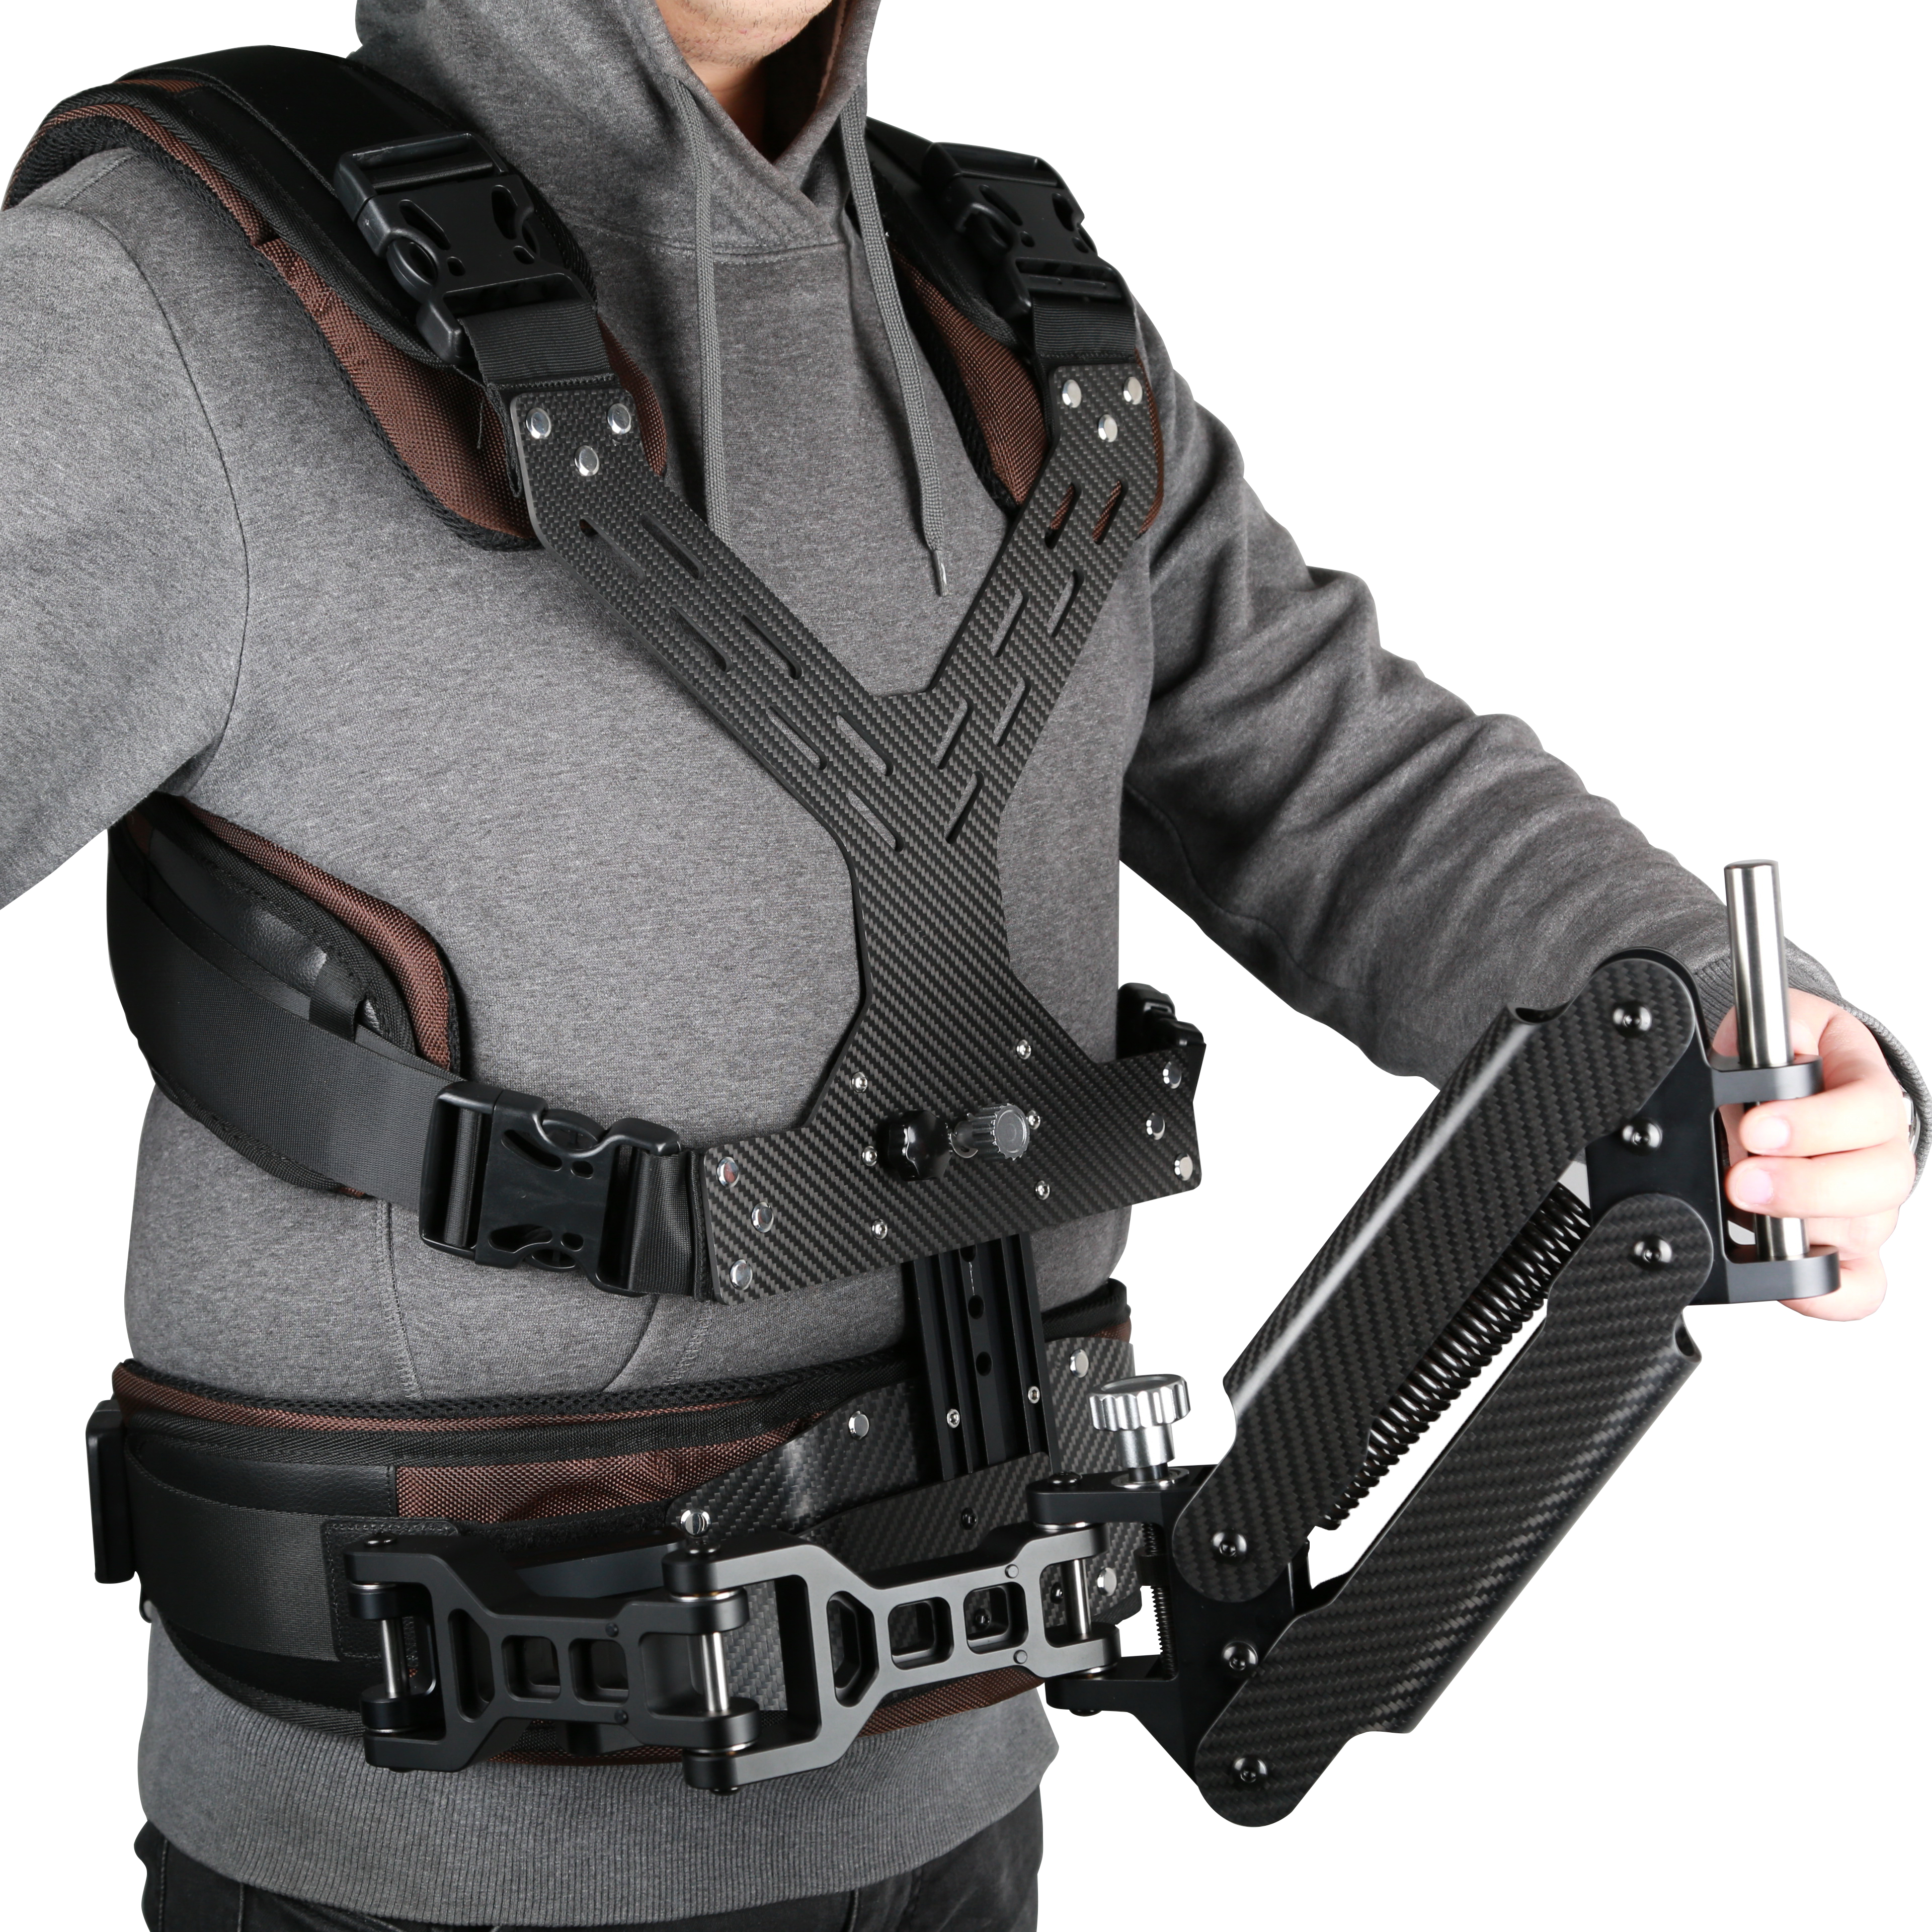 Carbon Fiber Steadicam Camera Vest Shooter Support System - Click Image to Close